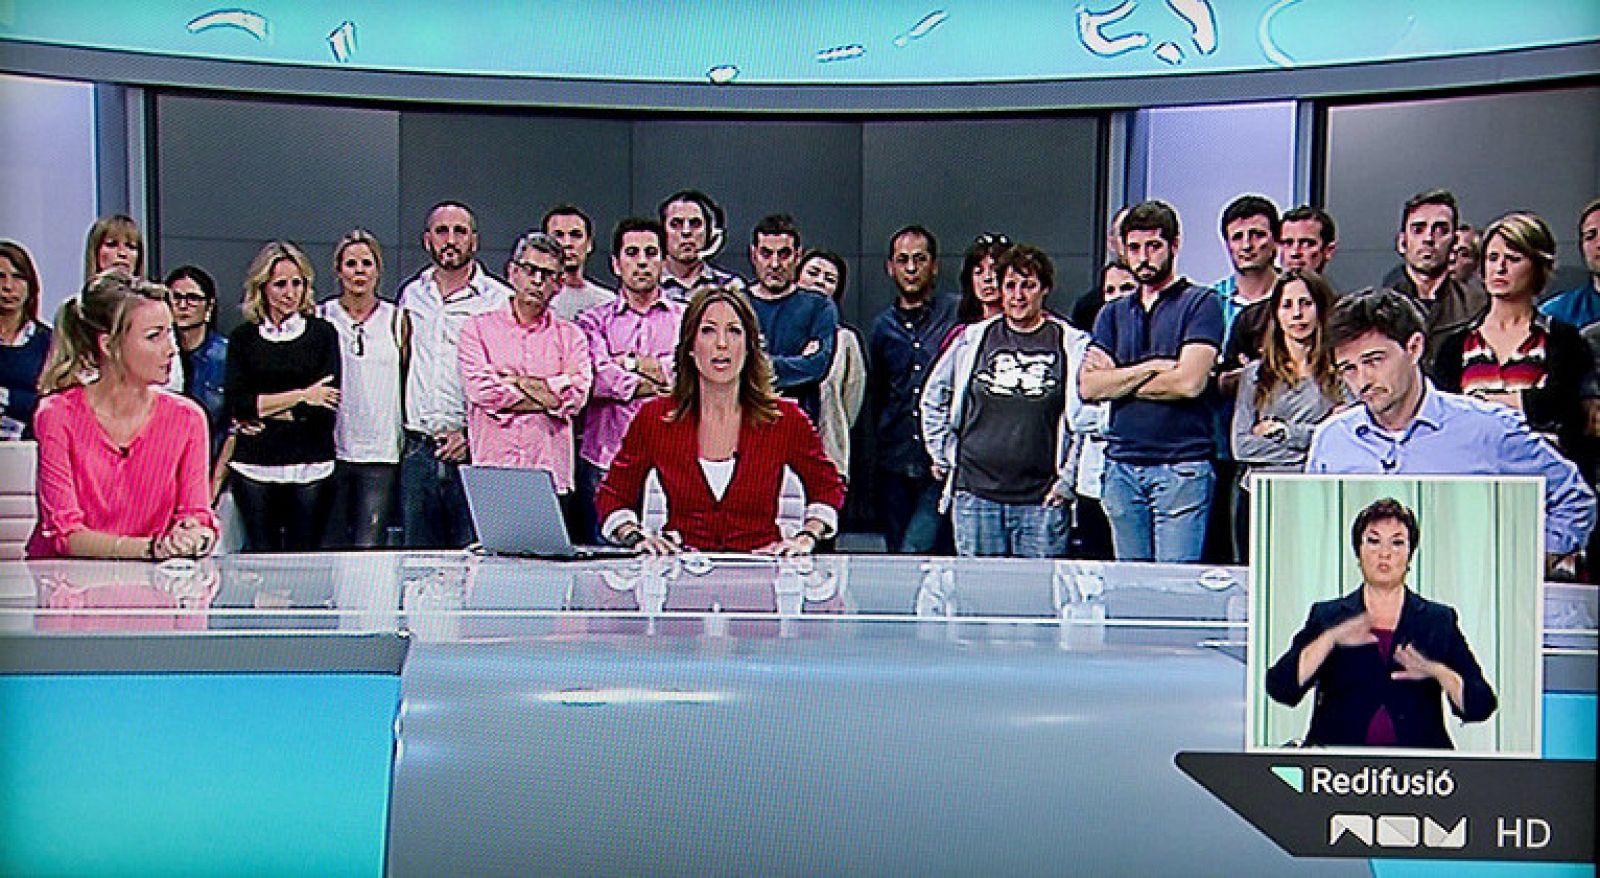 La Generalitat cierra la Radio Televisión Valenciana tras quedar anulado el ERE